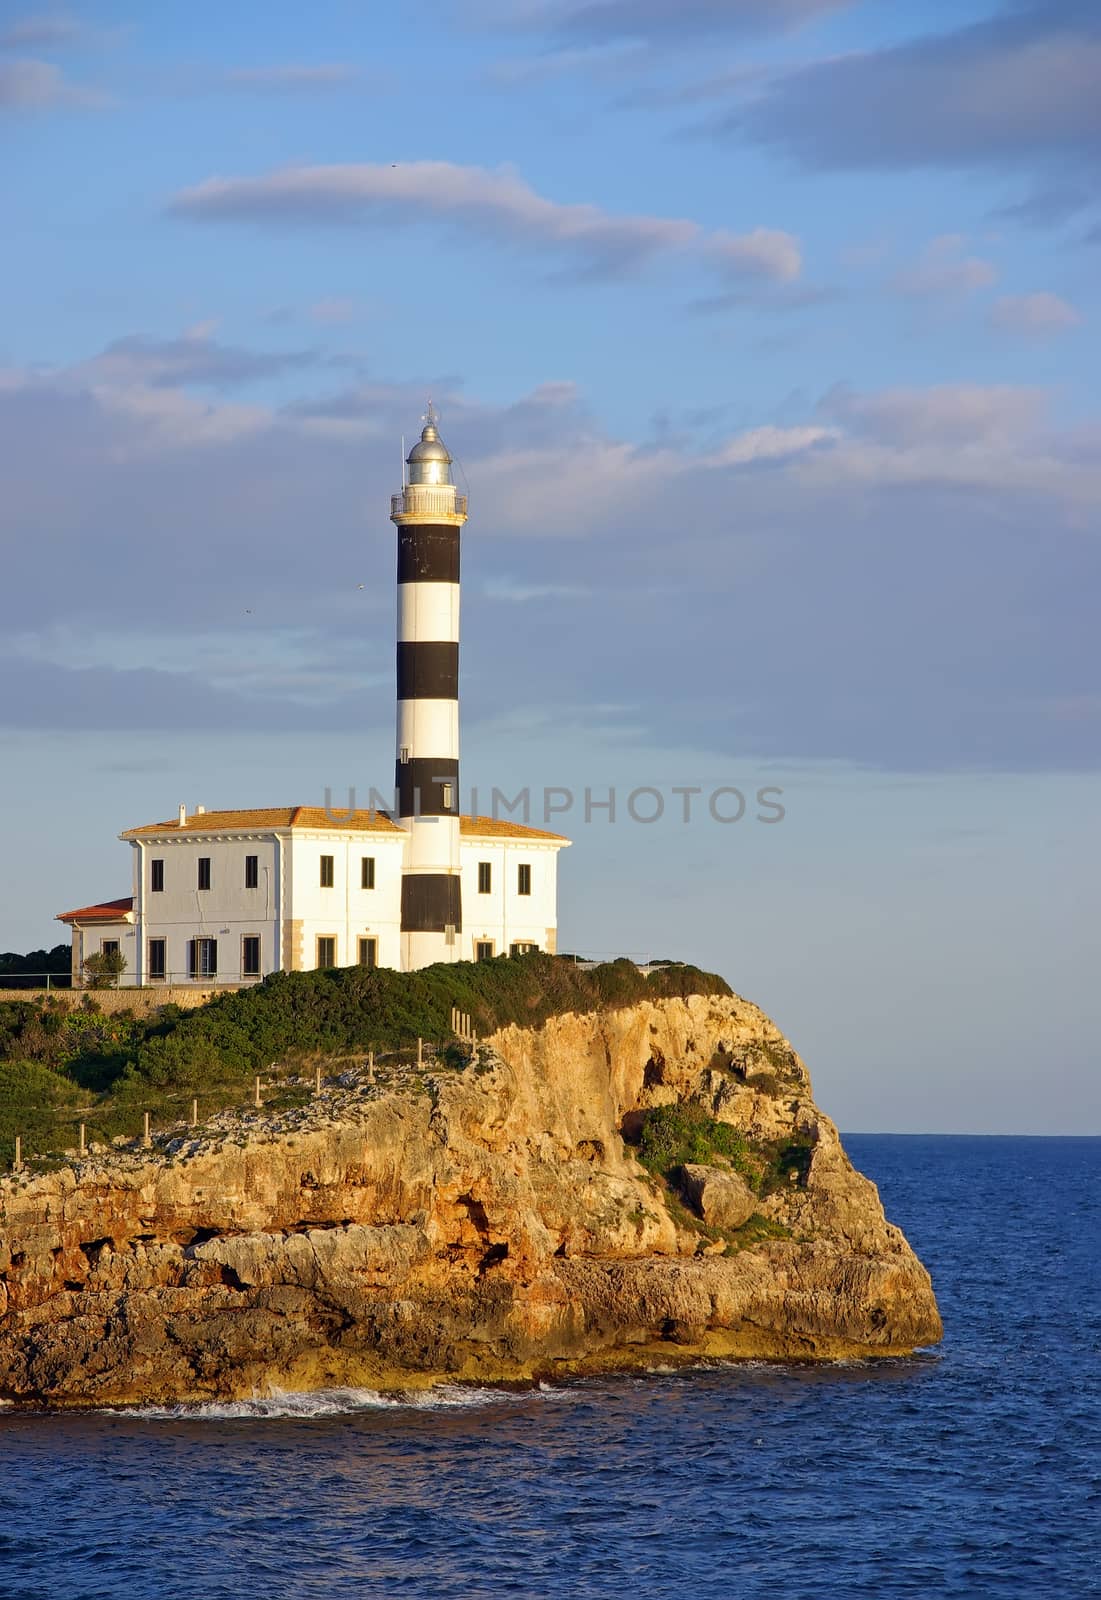 Porto Colom Lighthouse in Majorca (Spain)